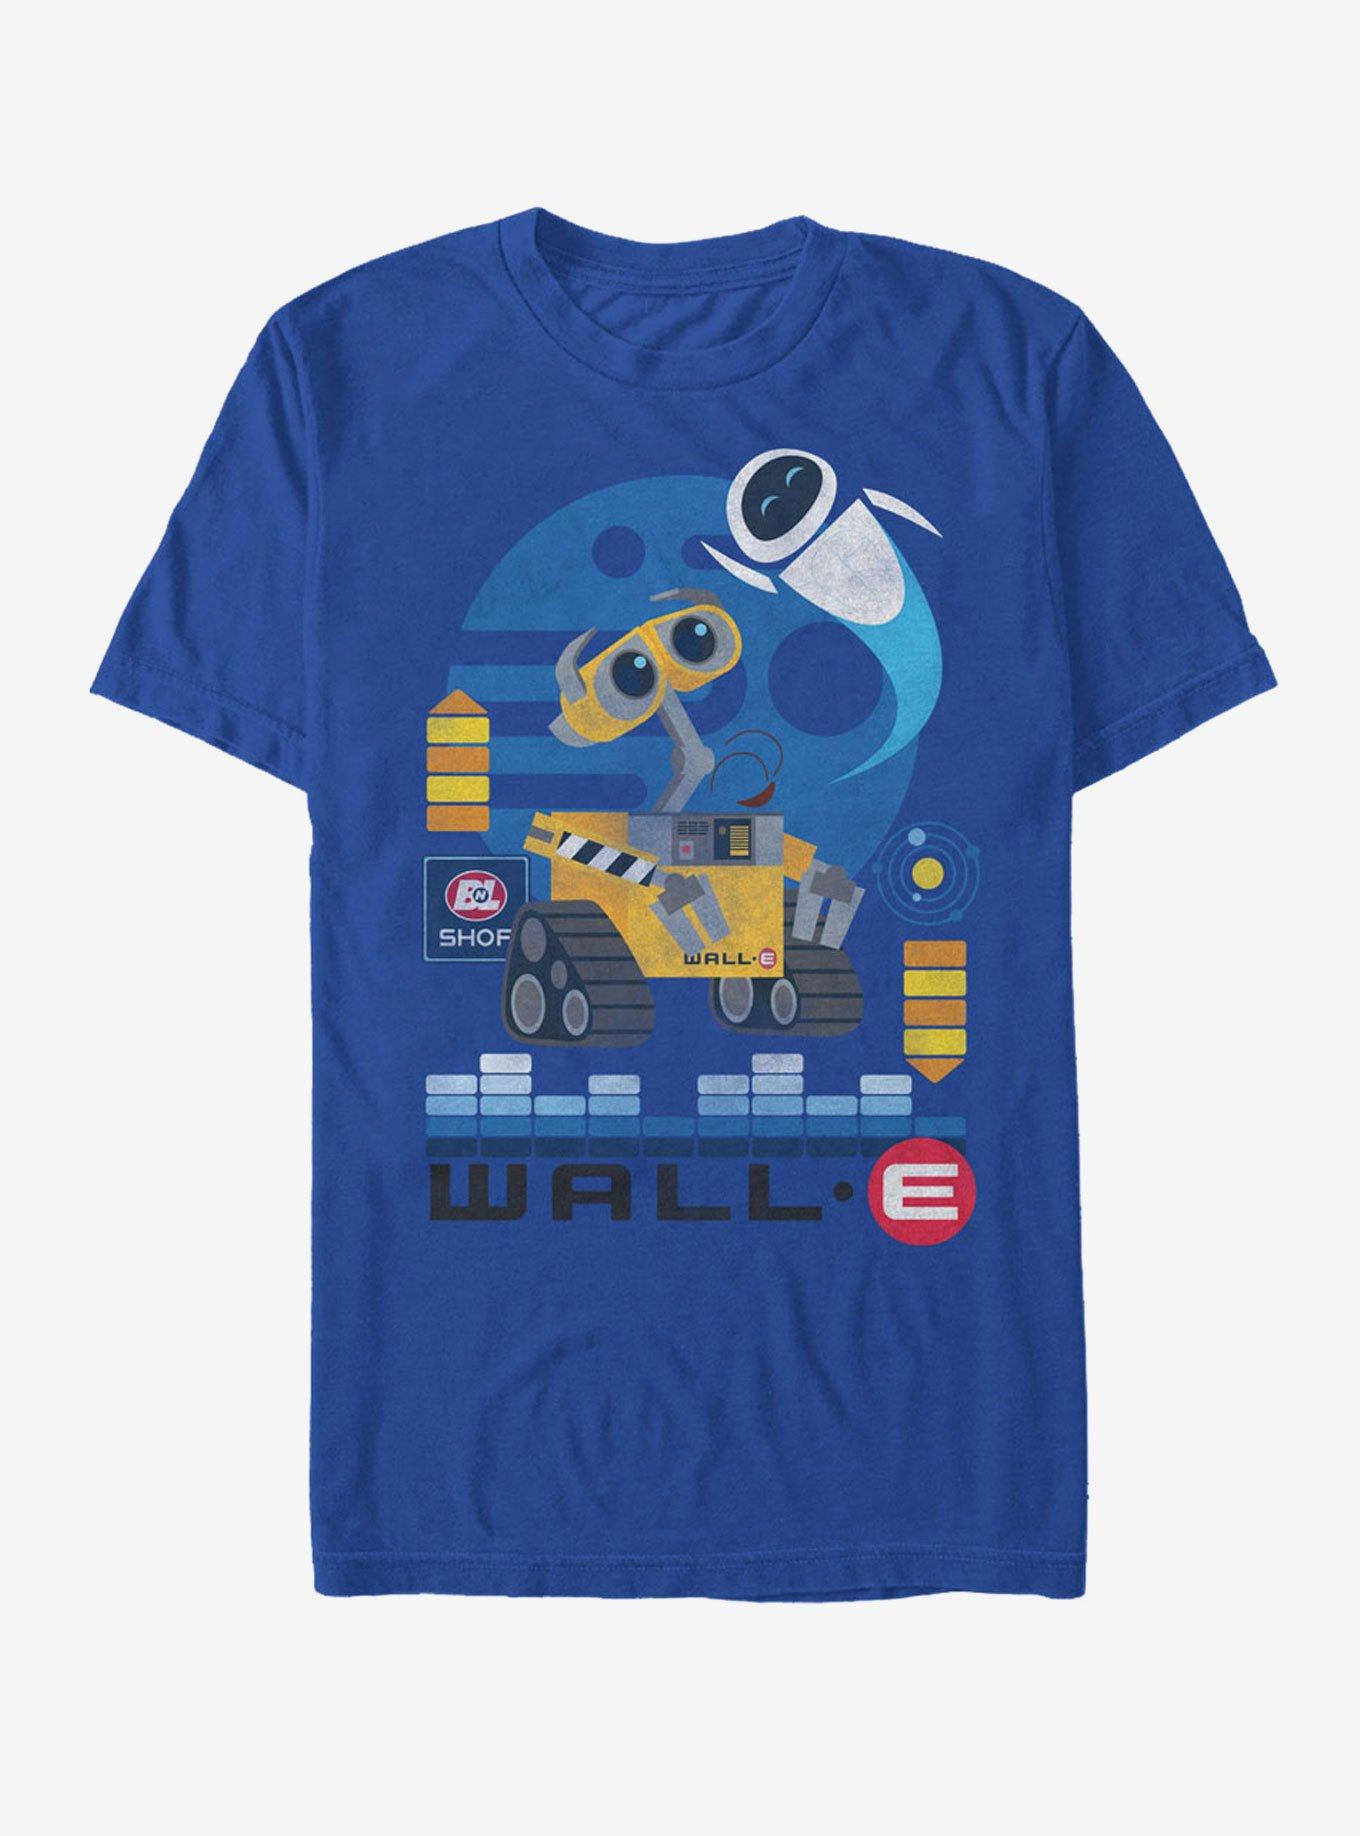 Disney Pixar Wall-E Eve Flight T-Shirt, ROYAL, hi-res